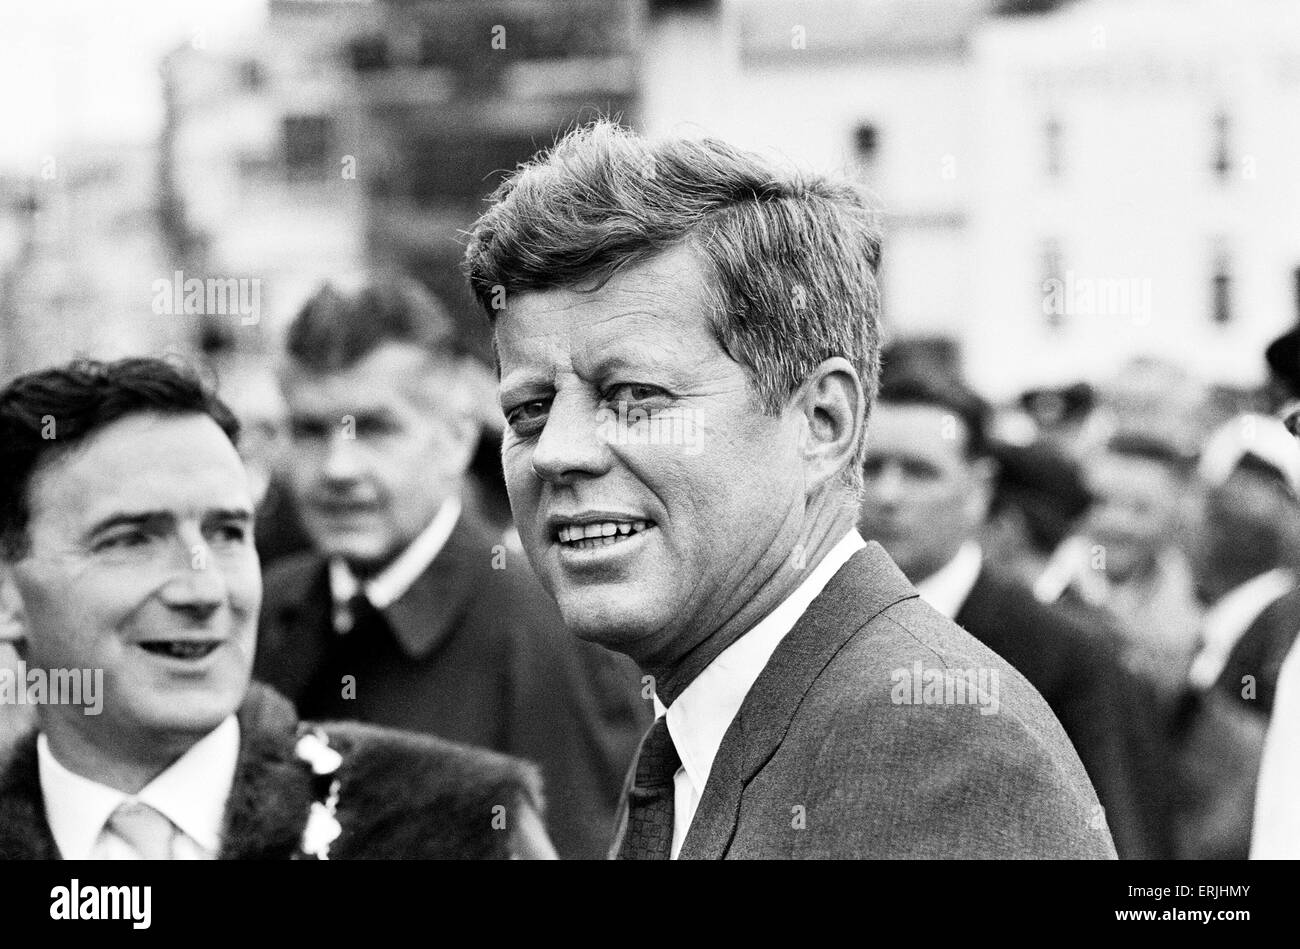 La visite du président américain John F. Kennedy à l'Irlande. Juillet 1963. Banque D'Images